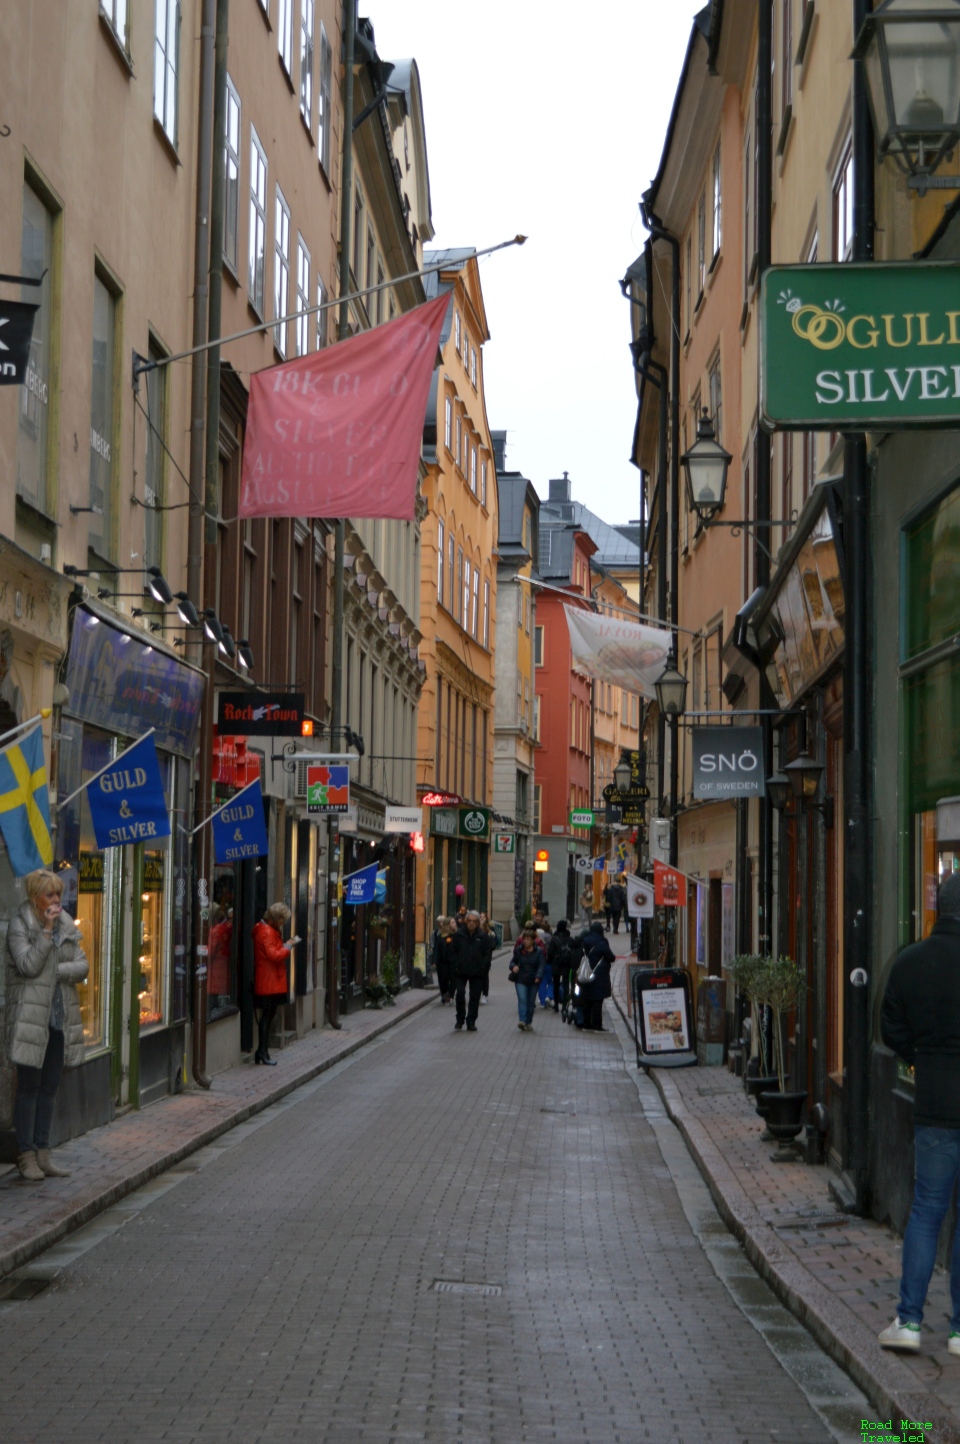 Stockholm Gamla Stan main alleyway